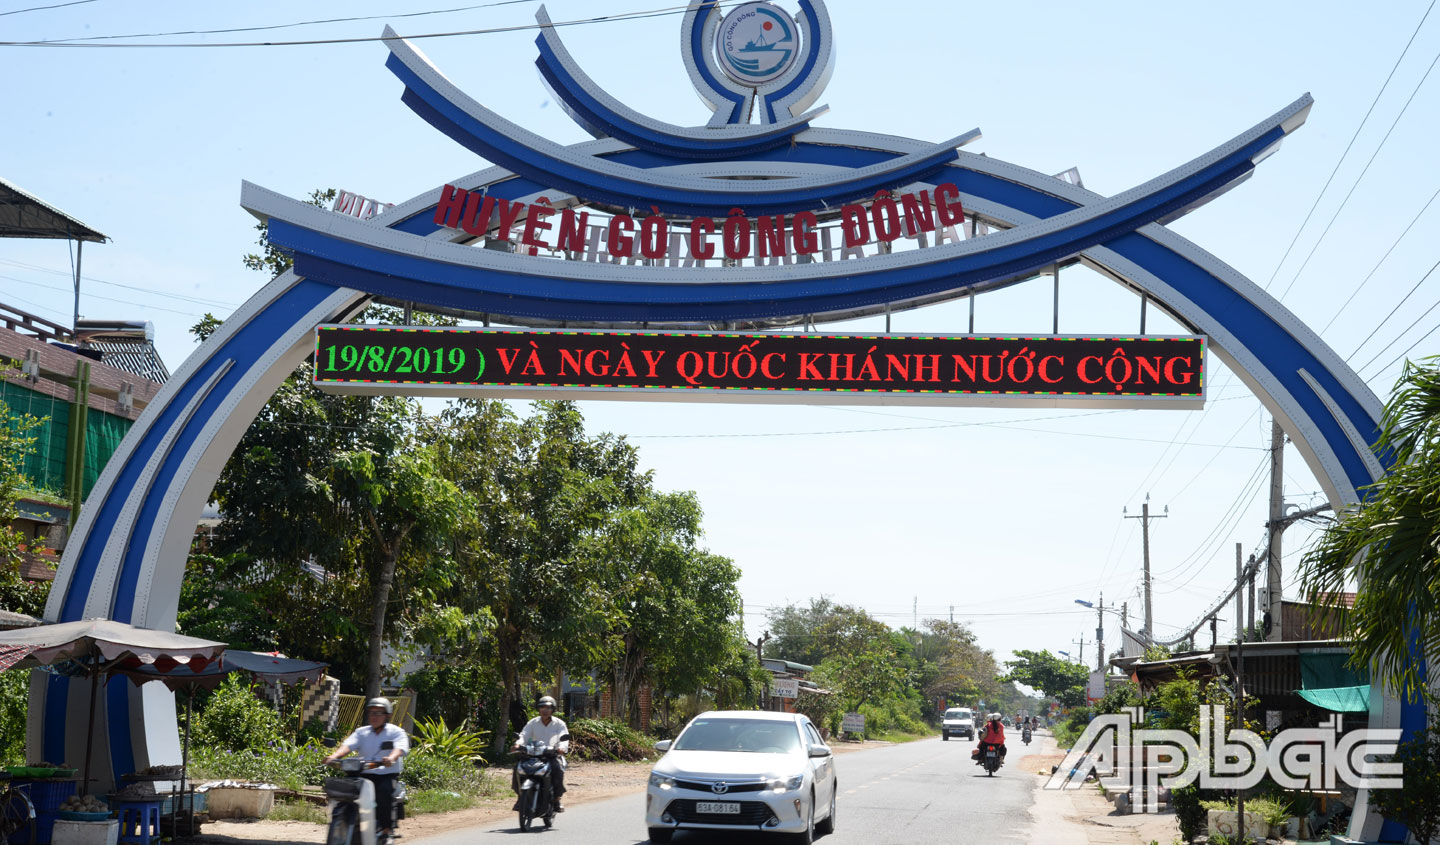 Cổng chào vào Khu hành chính của huyện Gò Công Đông.